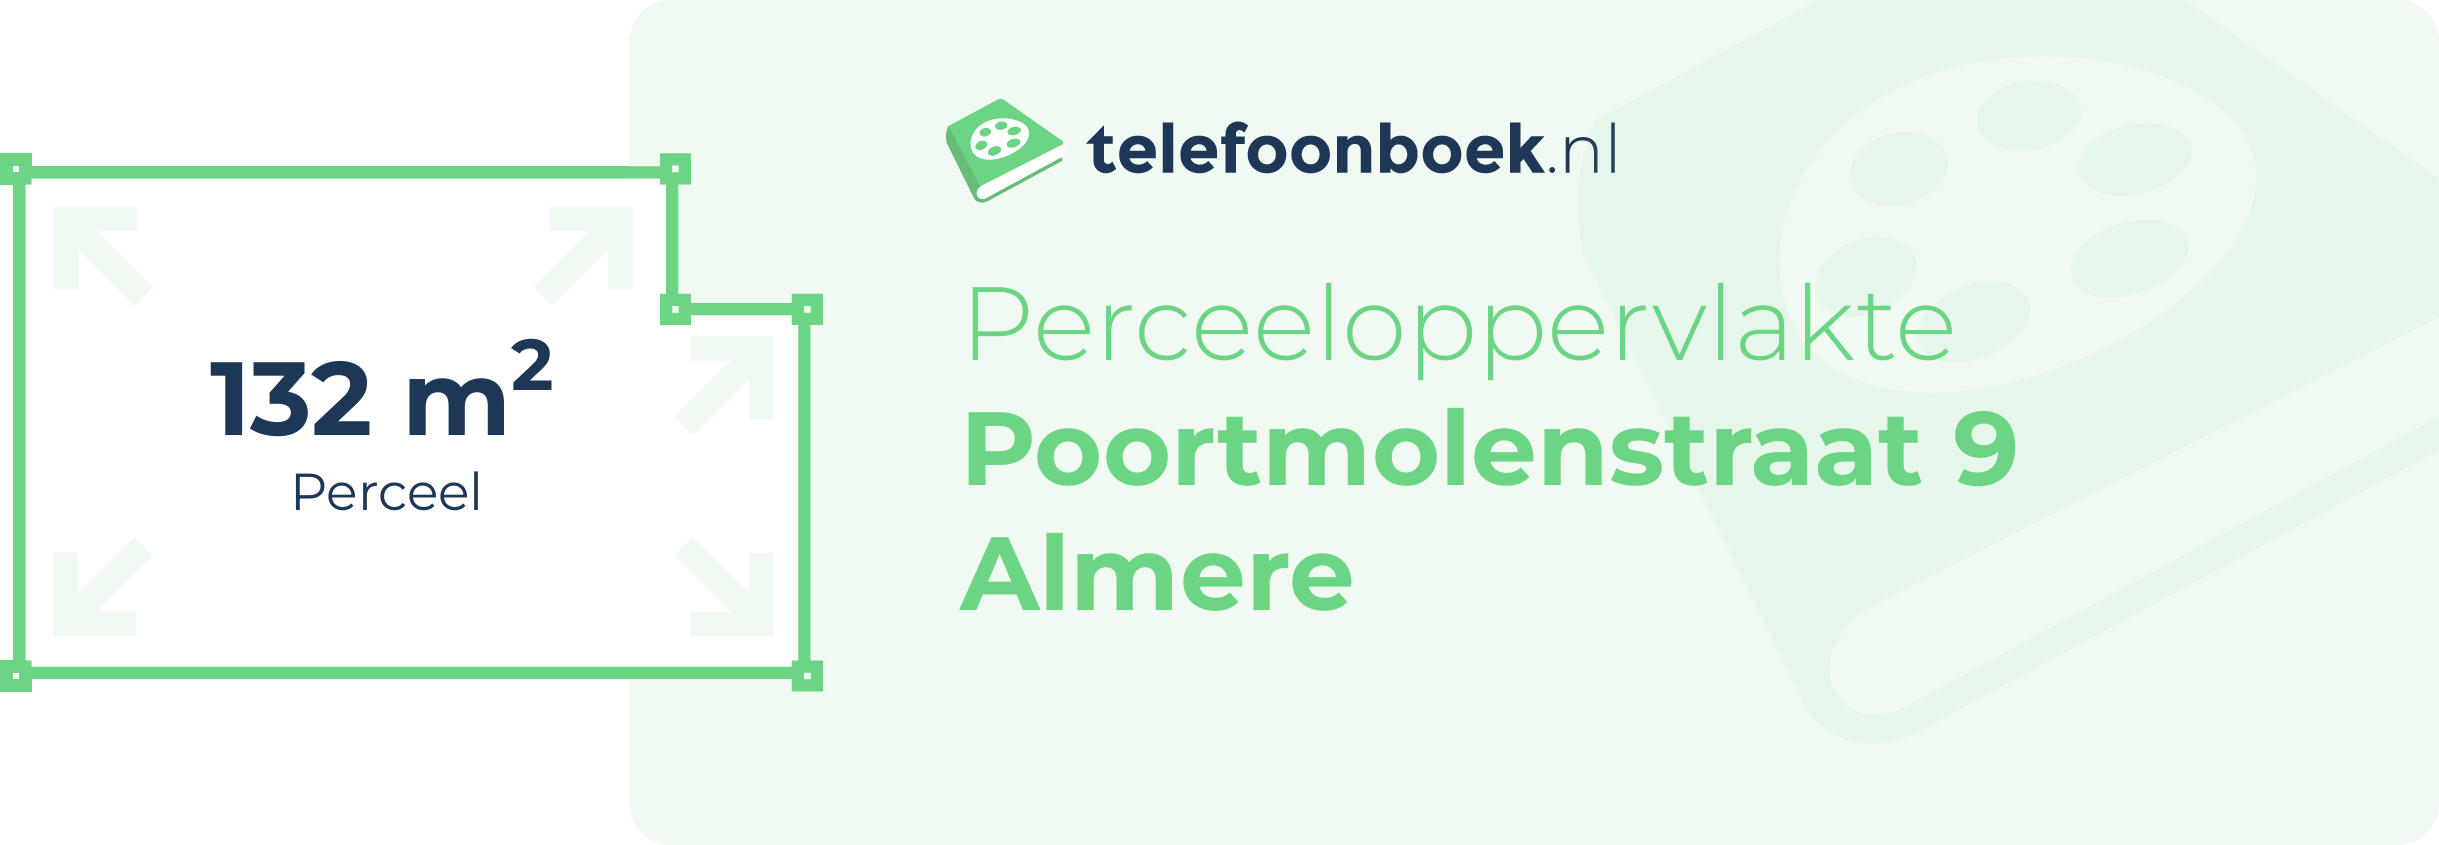 Perceeloppervlakte Poortmolenstraat 9 Almere